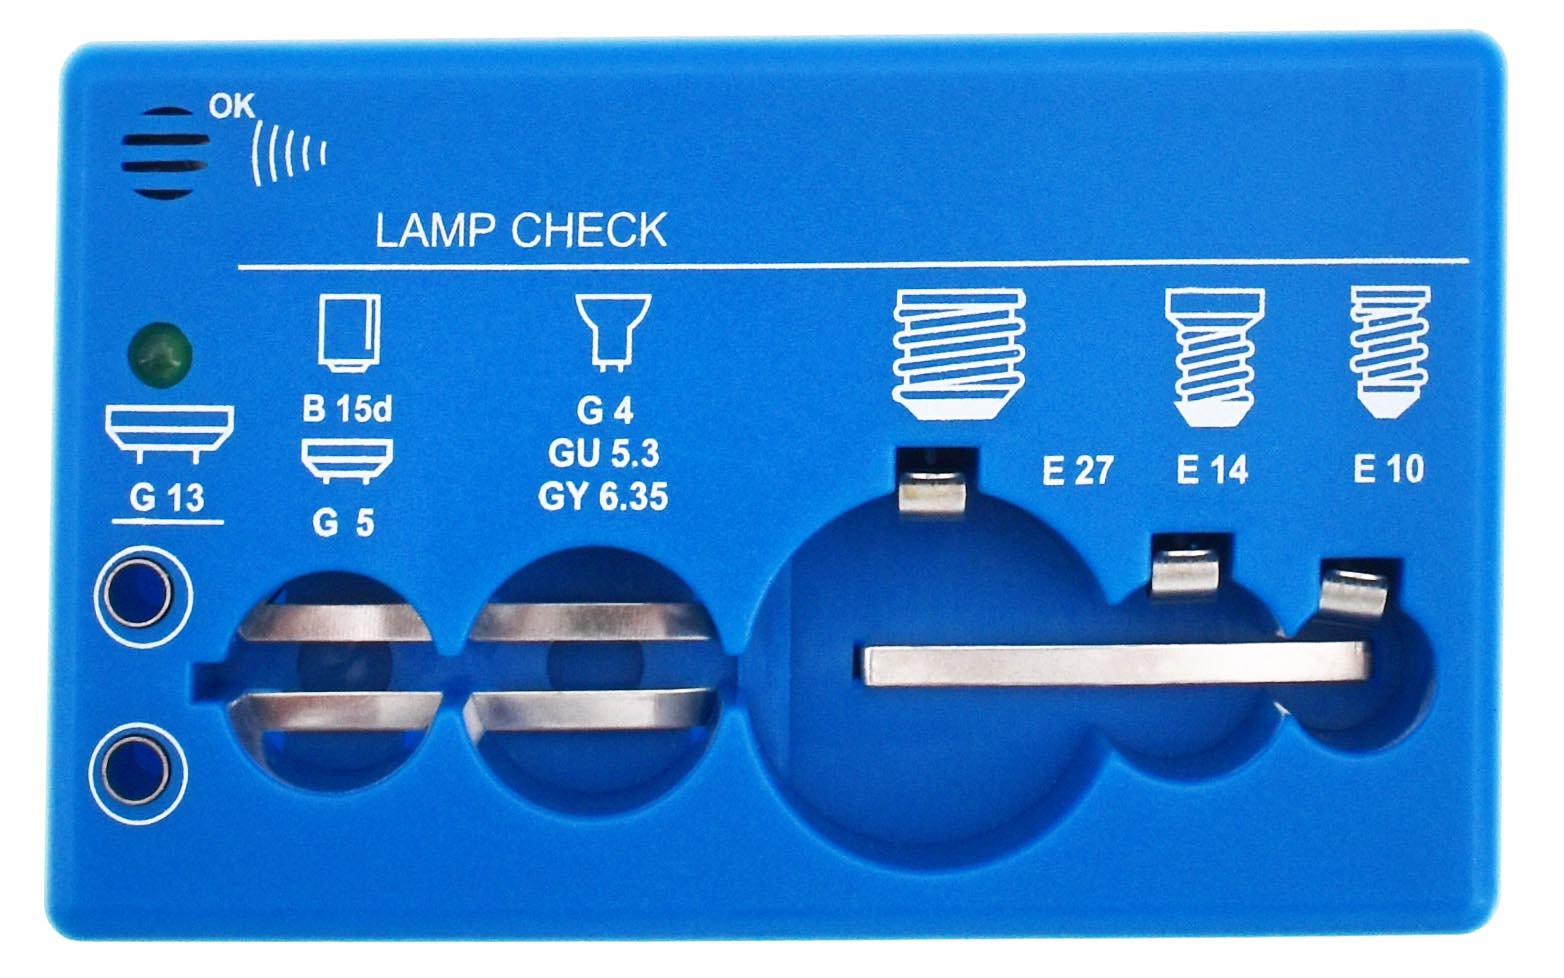 Es können Lampen mit den Sockeln E10 bis E27 und Anschlusslitzen getestet werden.